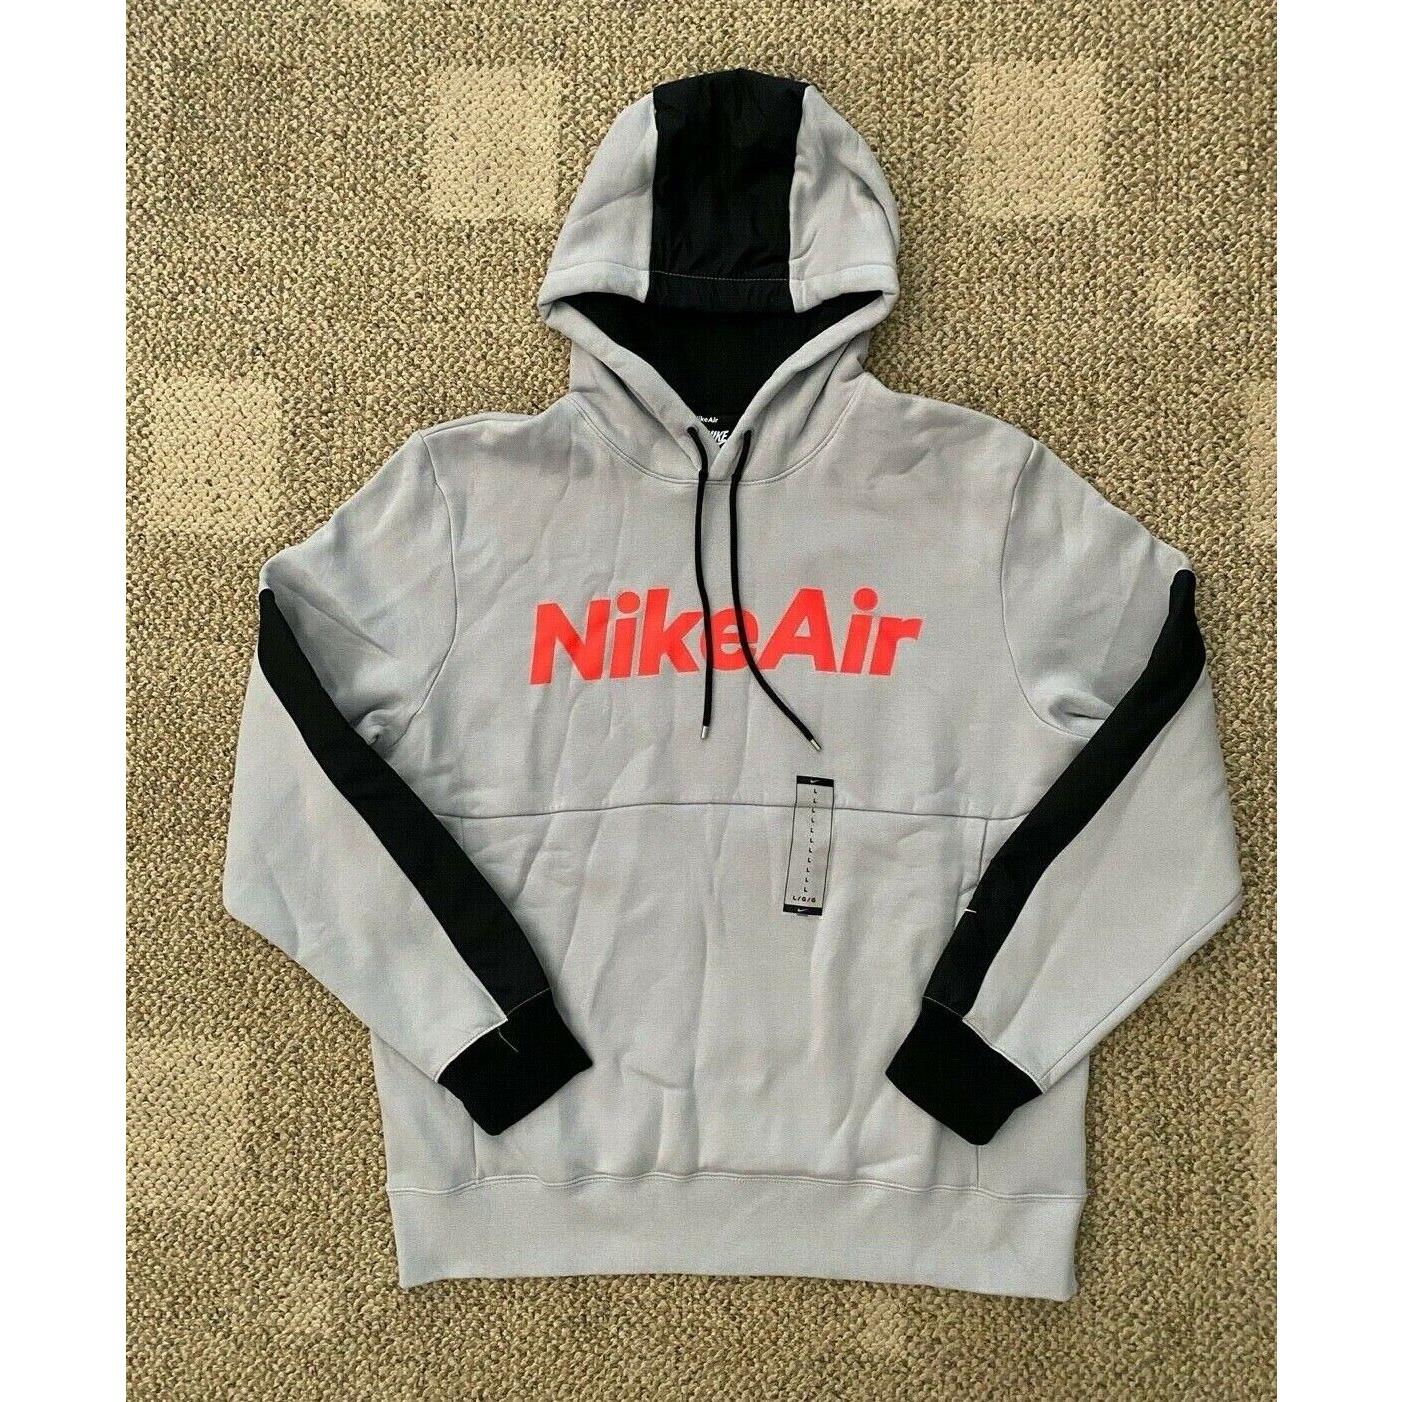 Mens Nike Air Fleece Pullover Hoodie Sweatshirt Gray/black Size Large CU4139-012